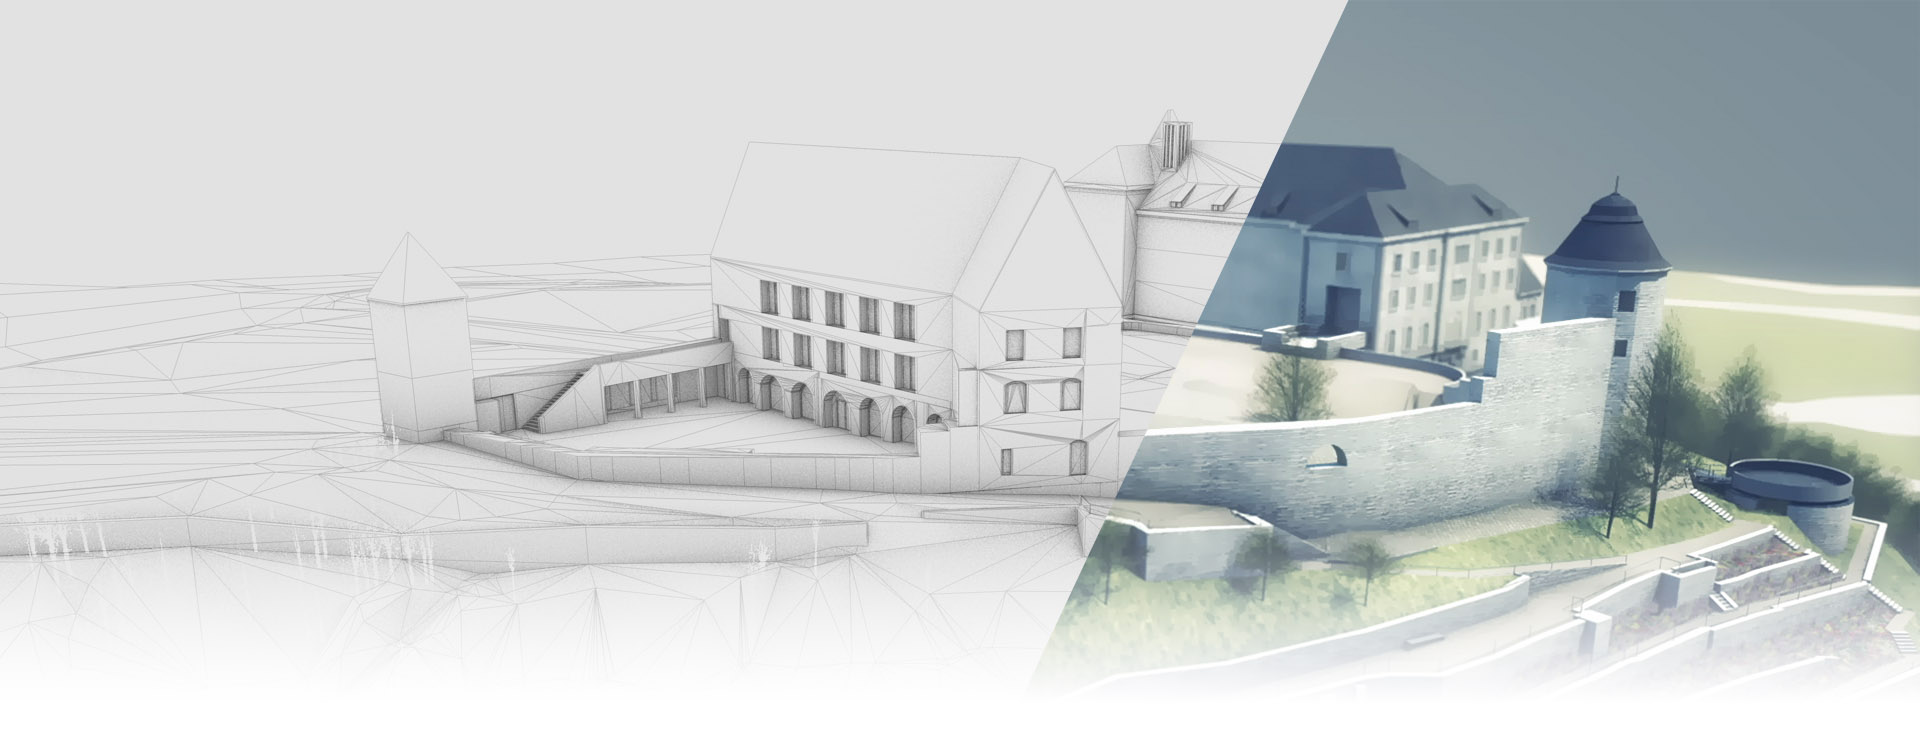 Titelgrafik 3D Visualisierung des Planungsentwurfs für die Schlossterrassen Plauen Stadt Plauen - Stadtumbaugebiet Schloßberg